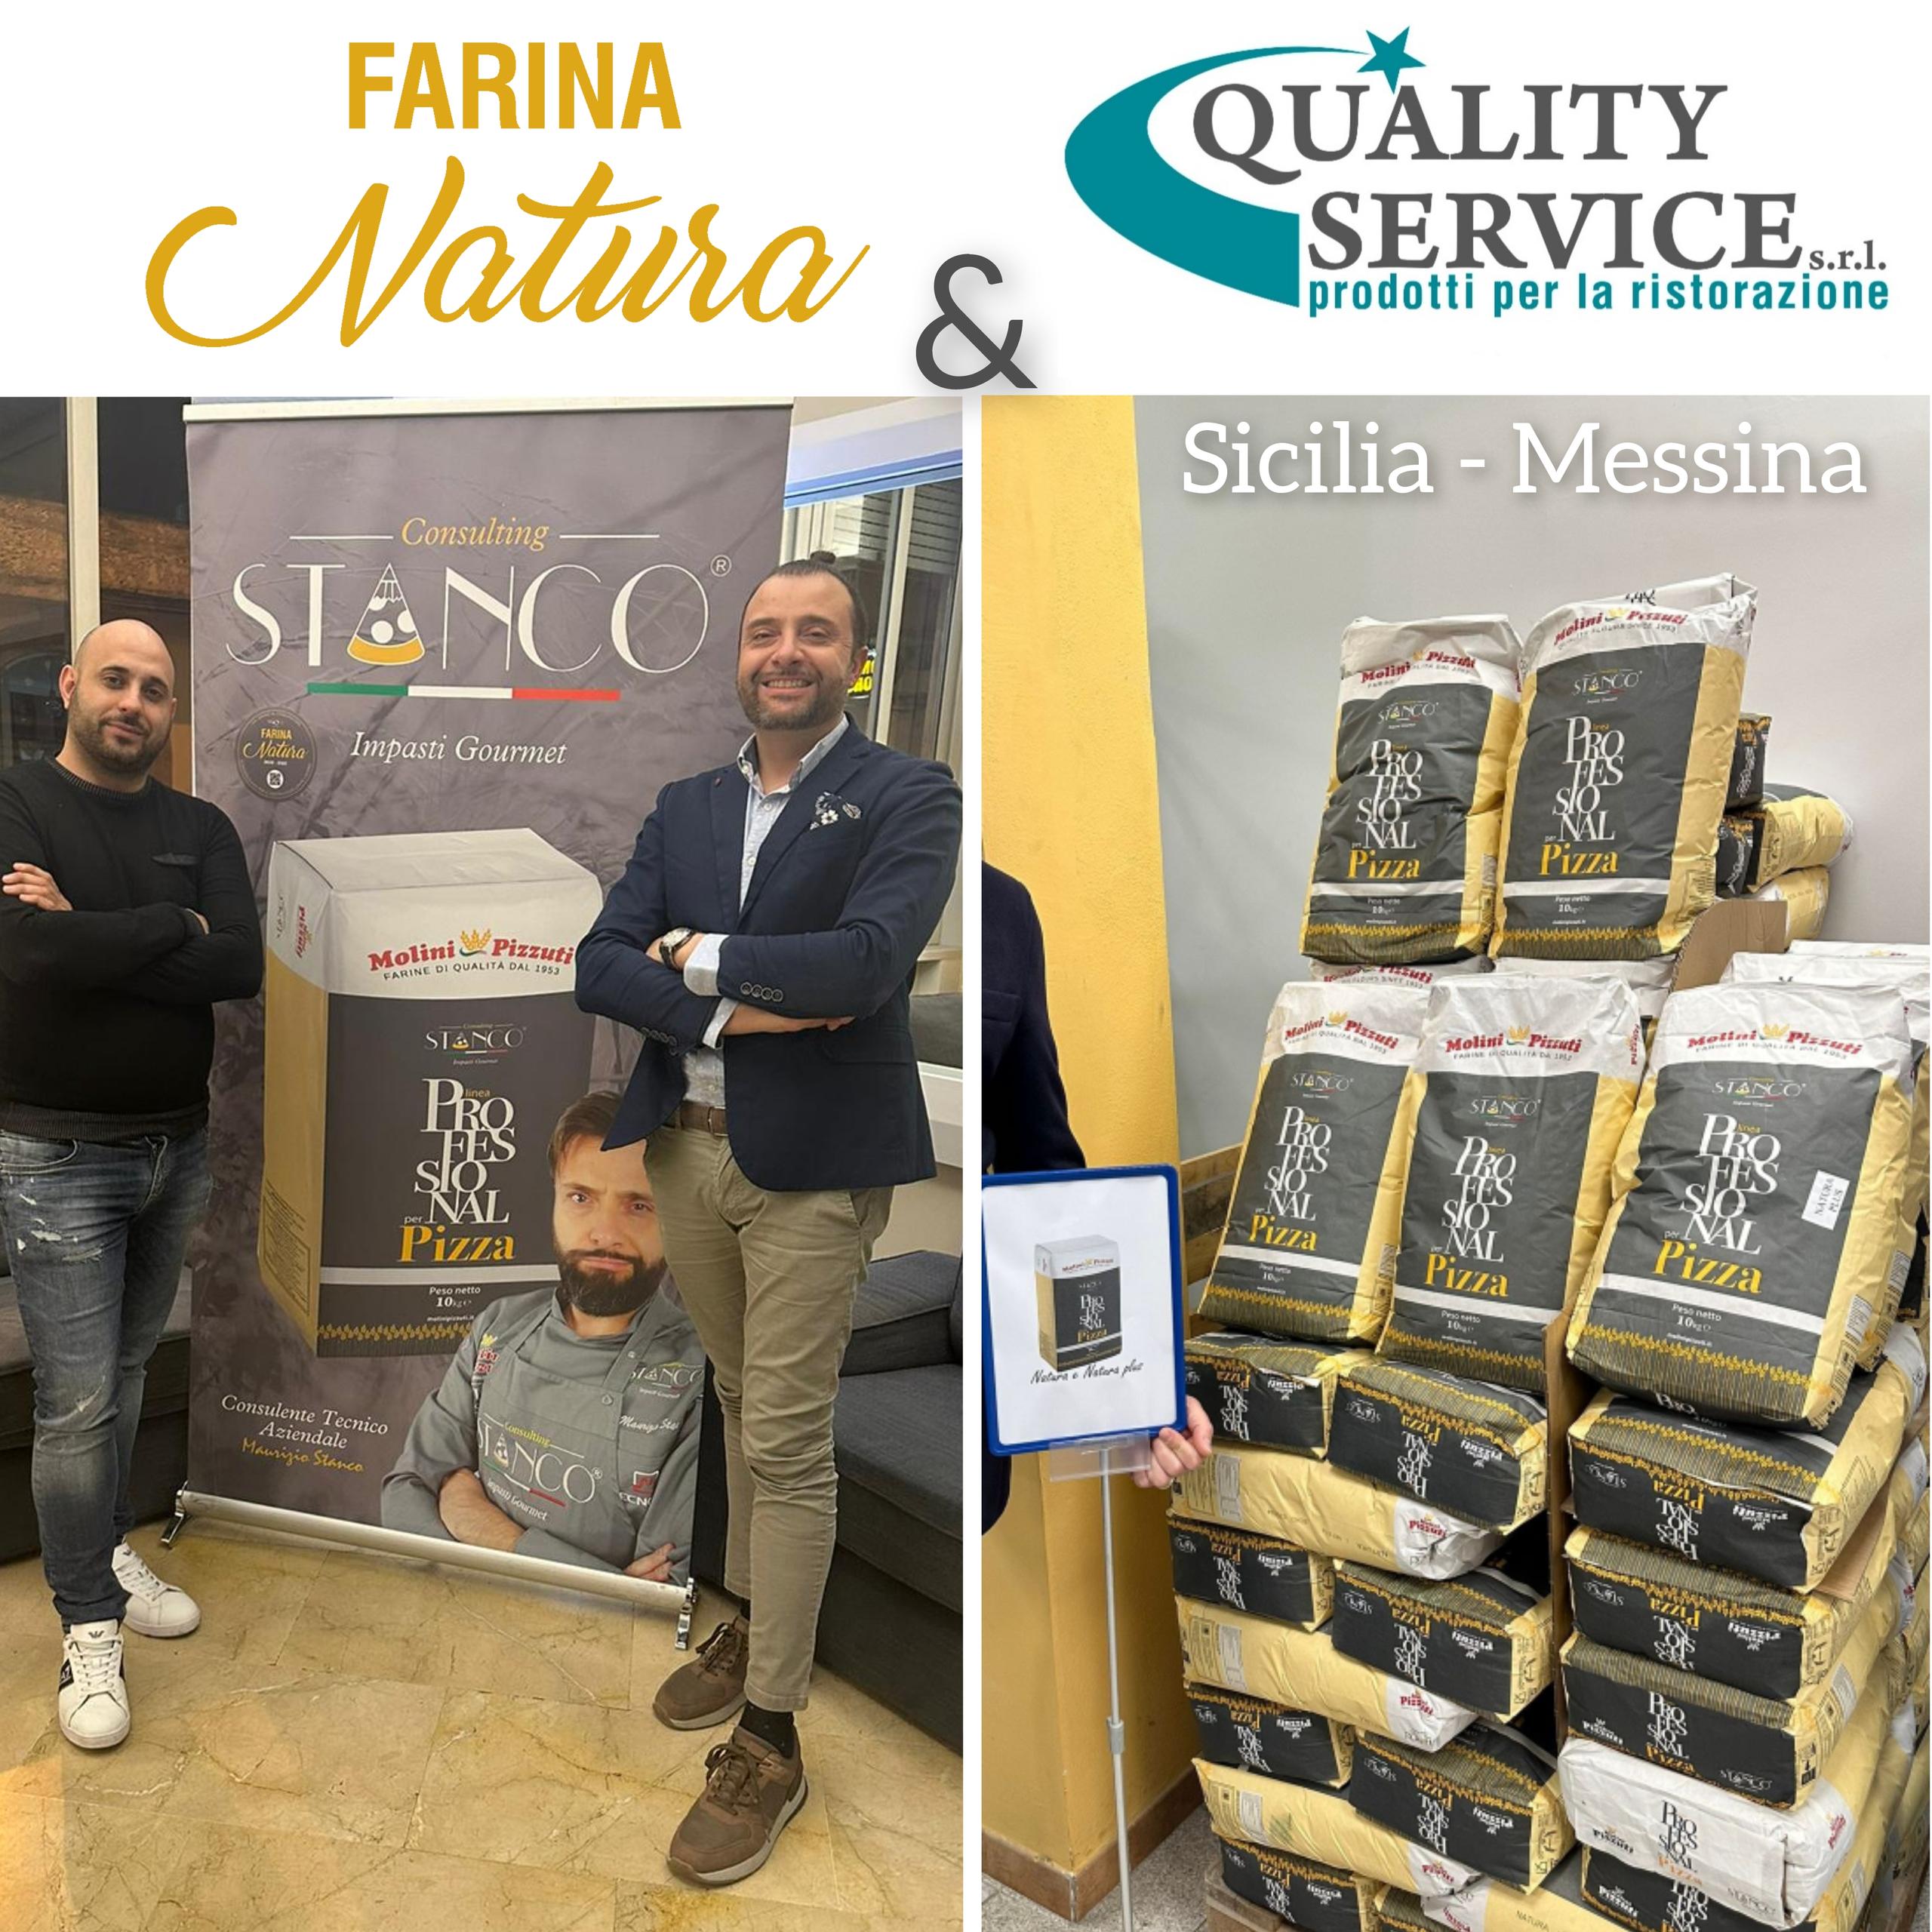 La Farina Natura arriva in Sicilia, Messina presso Quality Service a Barcellona Pozzo di Gotto, in collaborazione con il Consulente Tecnico Maurizio Stanco